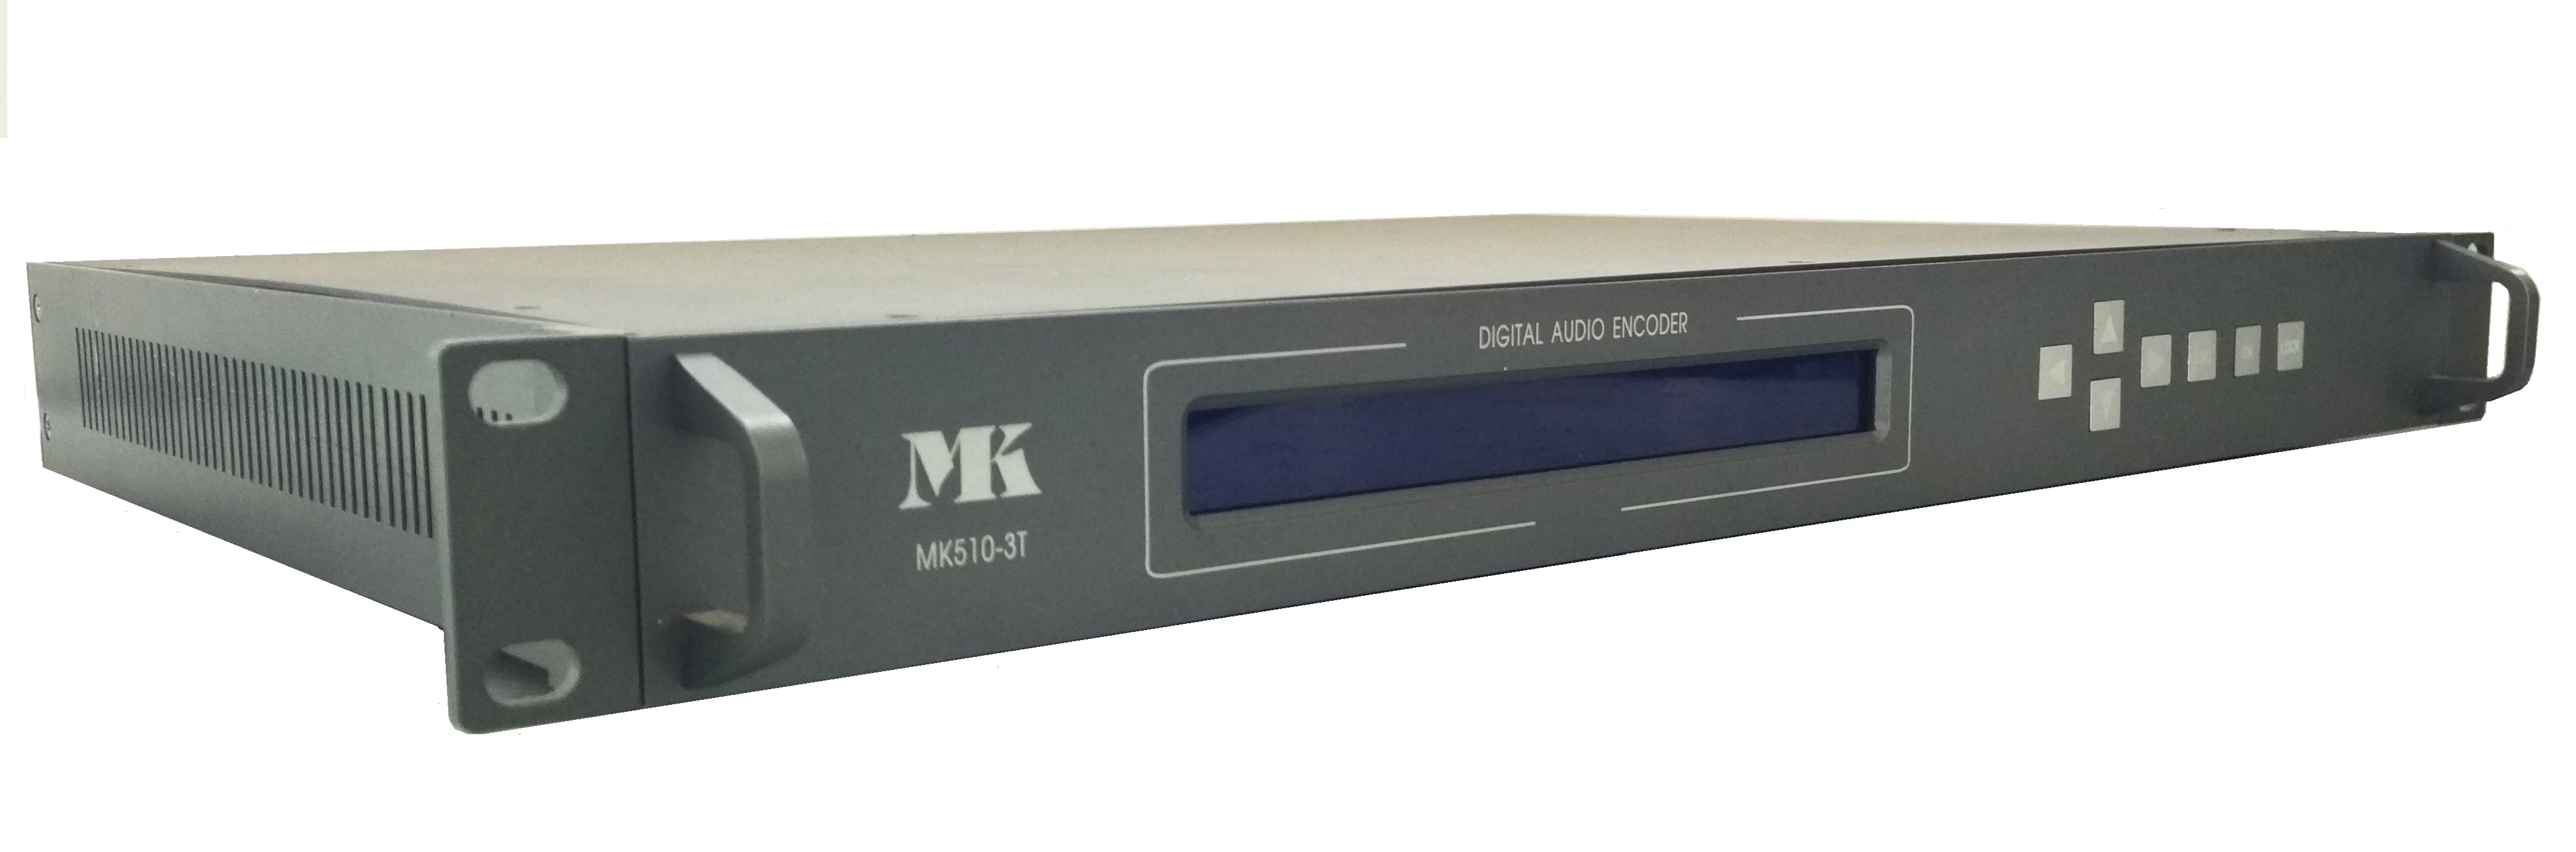 MK510系列多接口数字音频传输设备图片